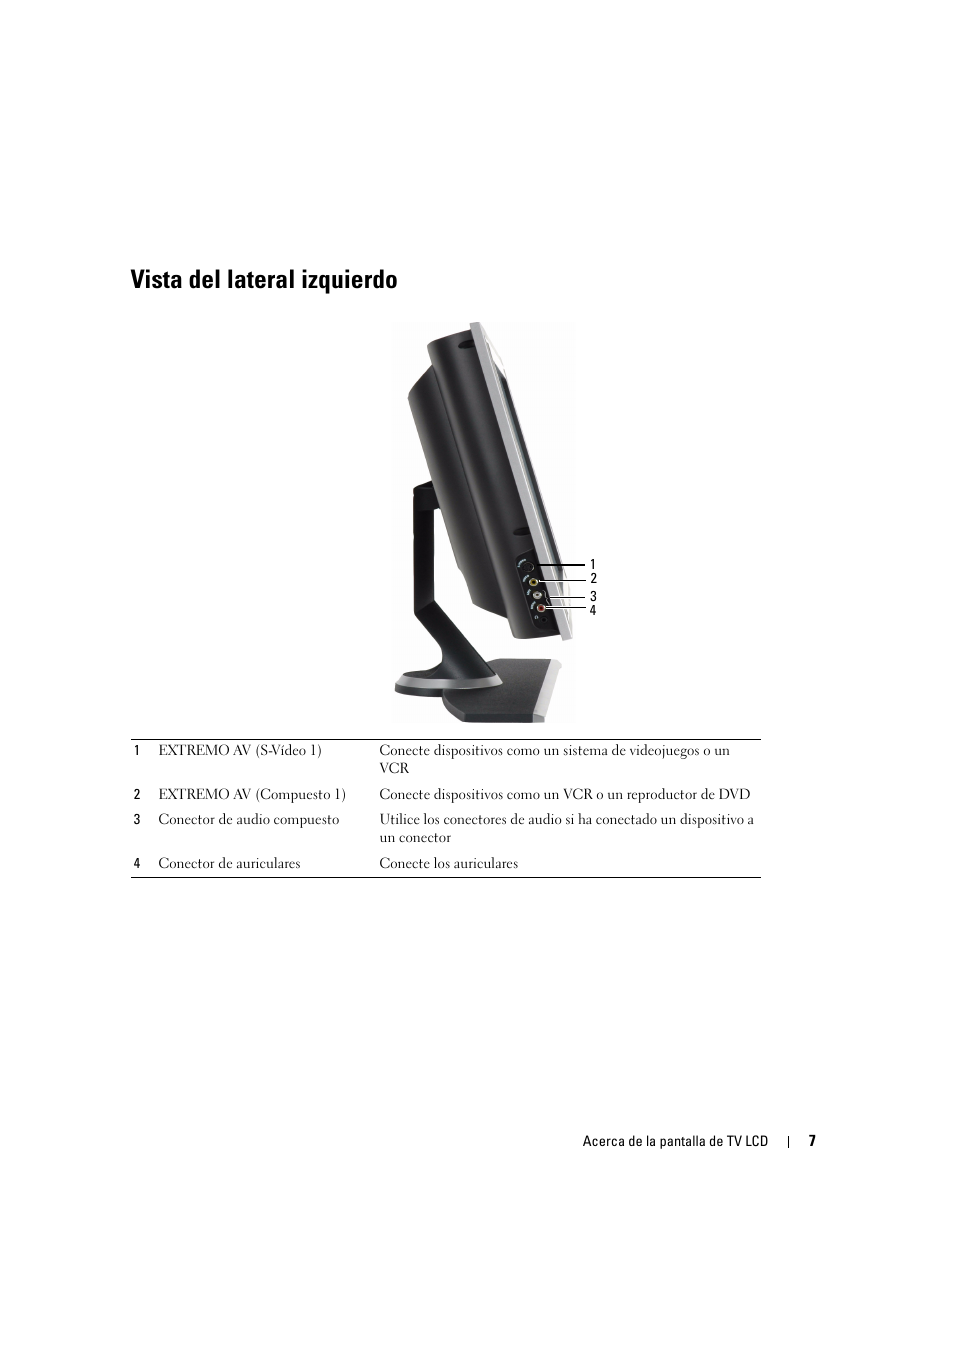 Vista del lateral izquierdo | Dell LCD TV W2606C Manual del usuario | Página 7 / 60